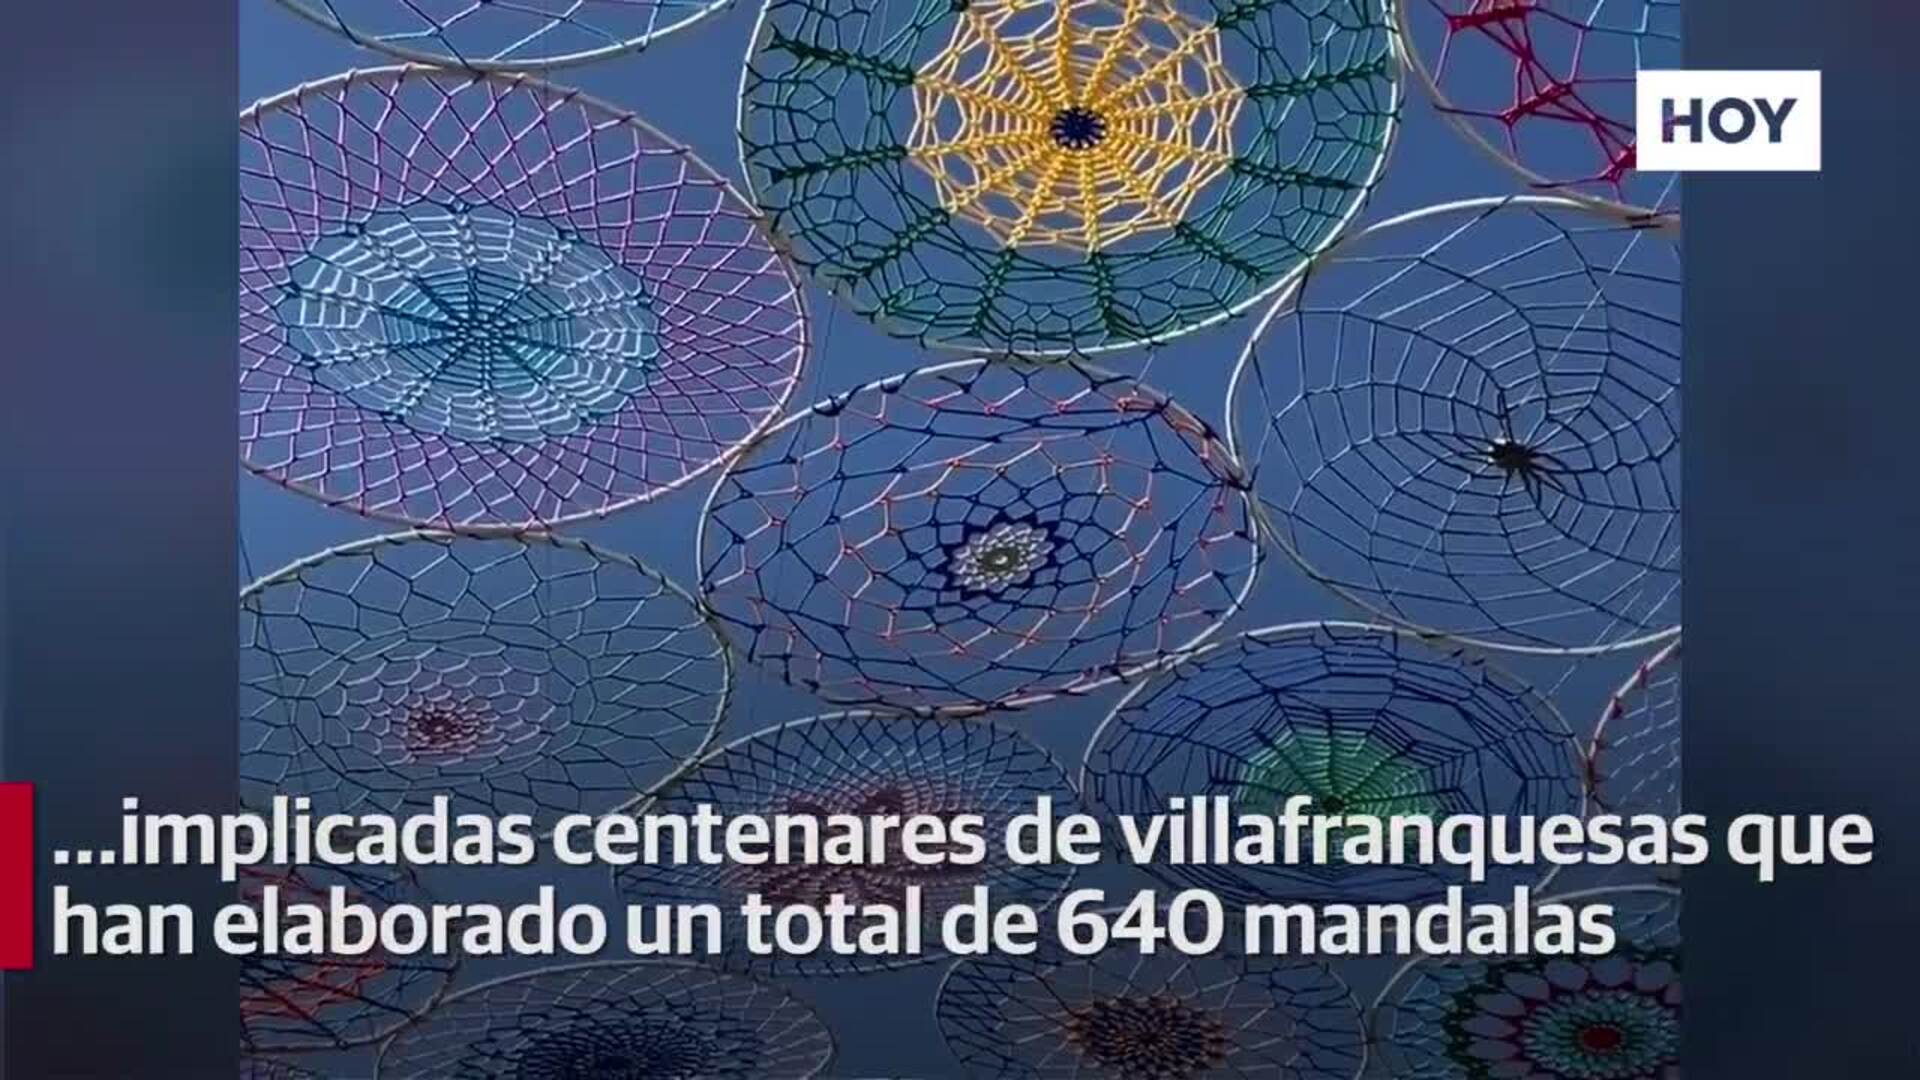 La plaza de la Coronada, llena de color y arte con las más de 600 mandalas a crochet